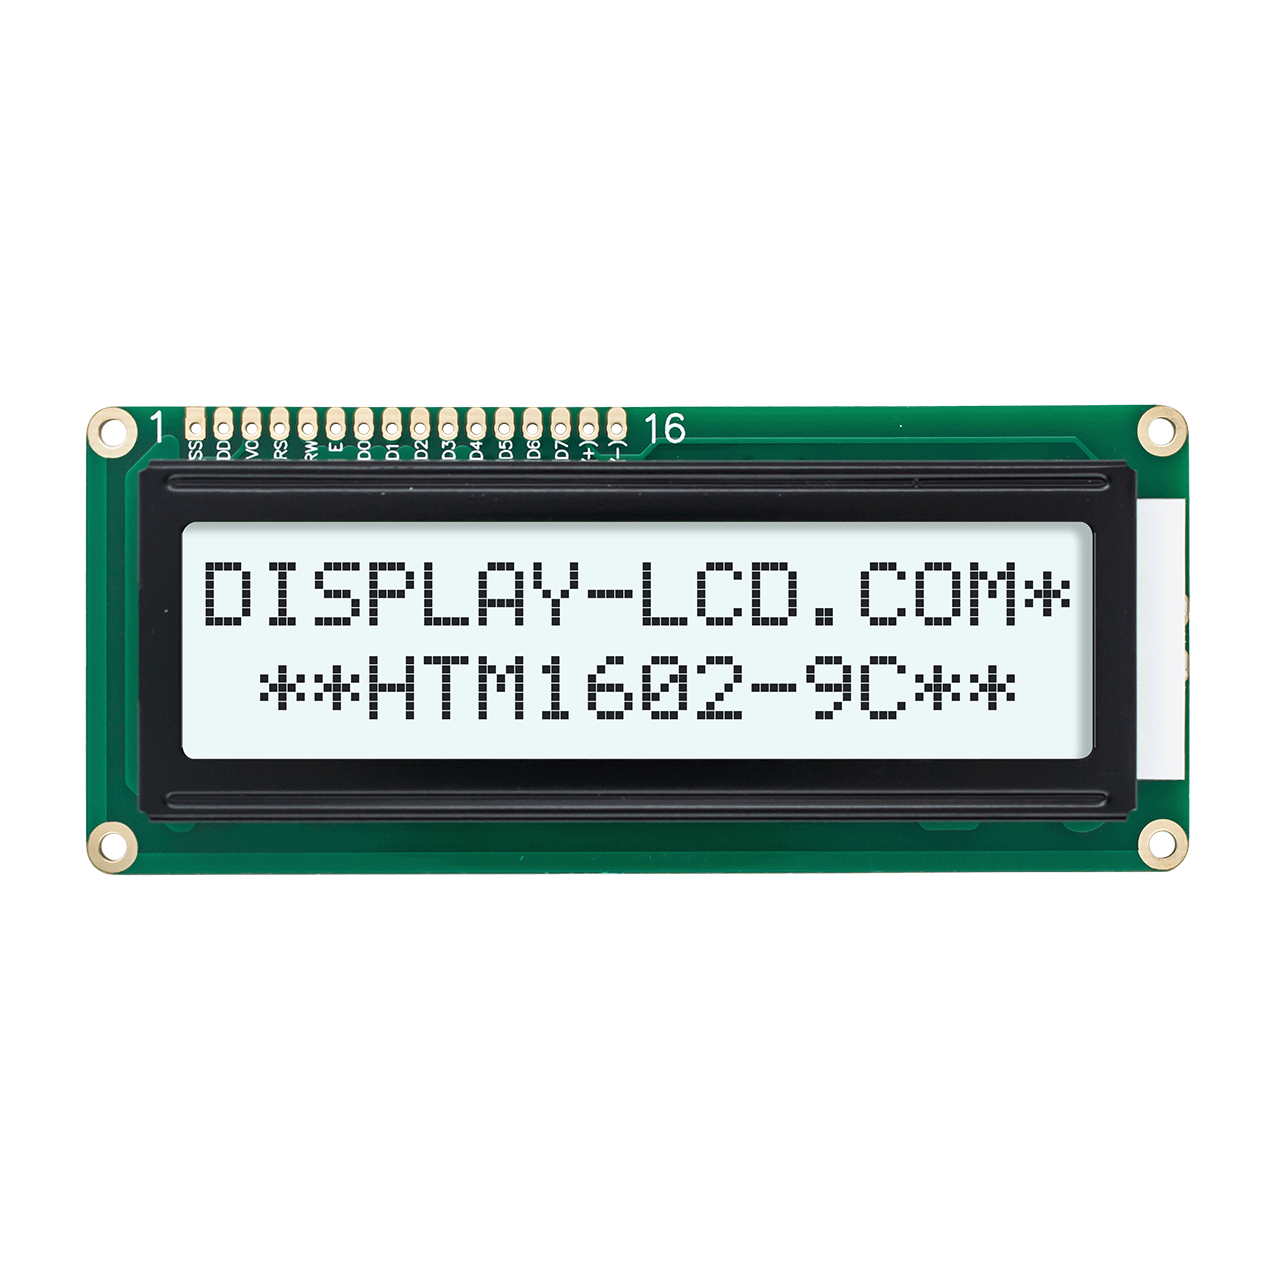 2X16 字符液晶模组显示屏 FSTN+ 带白色背光 5.0V-Arduino